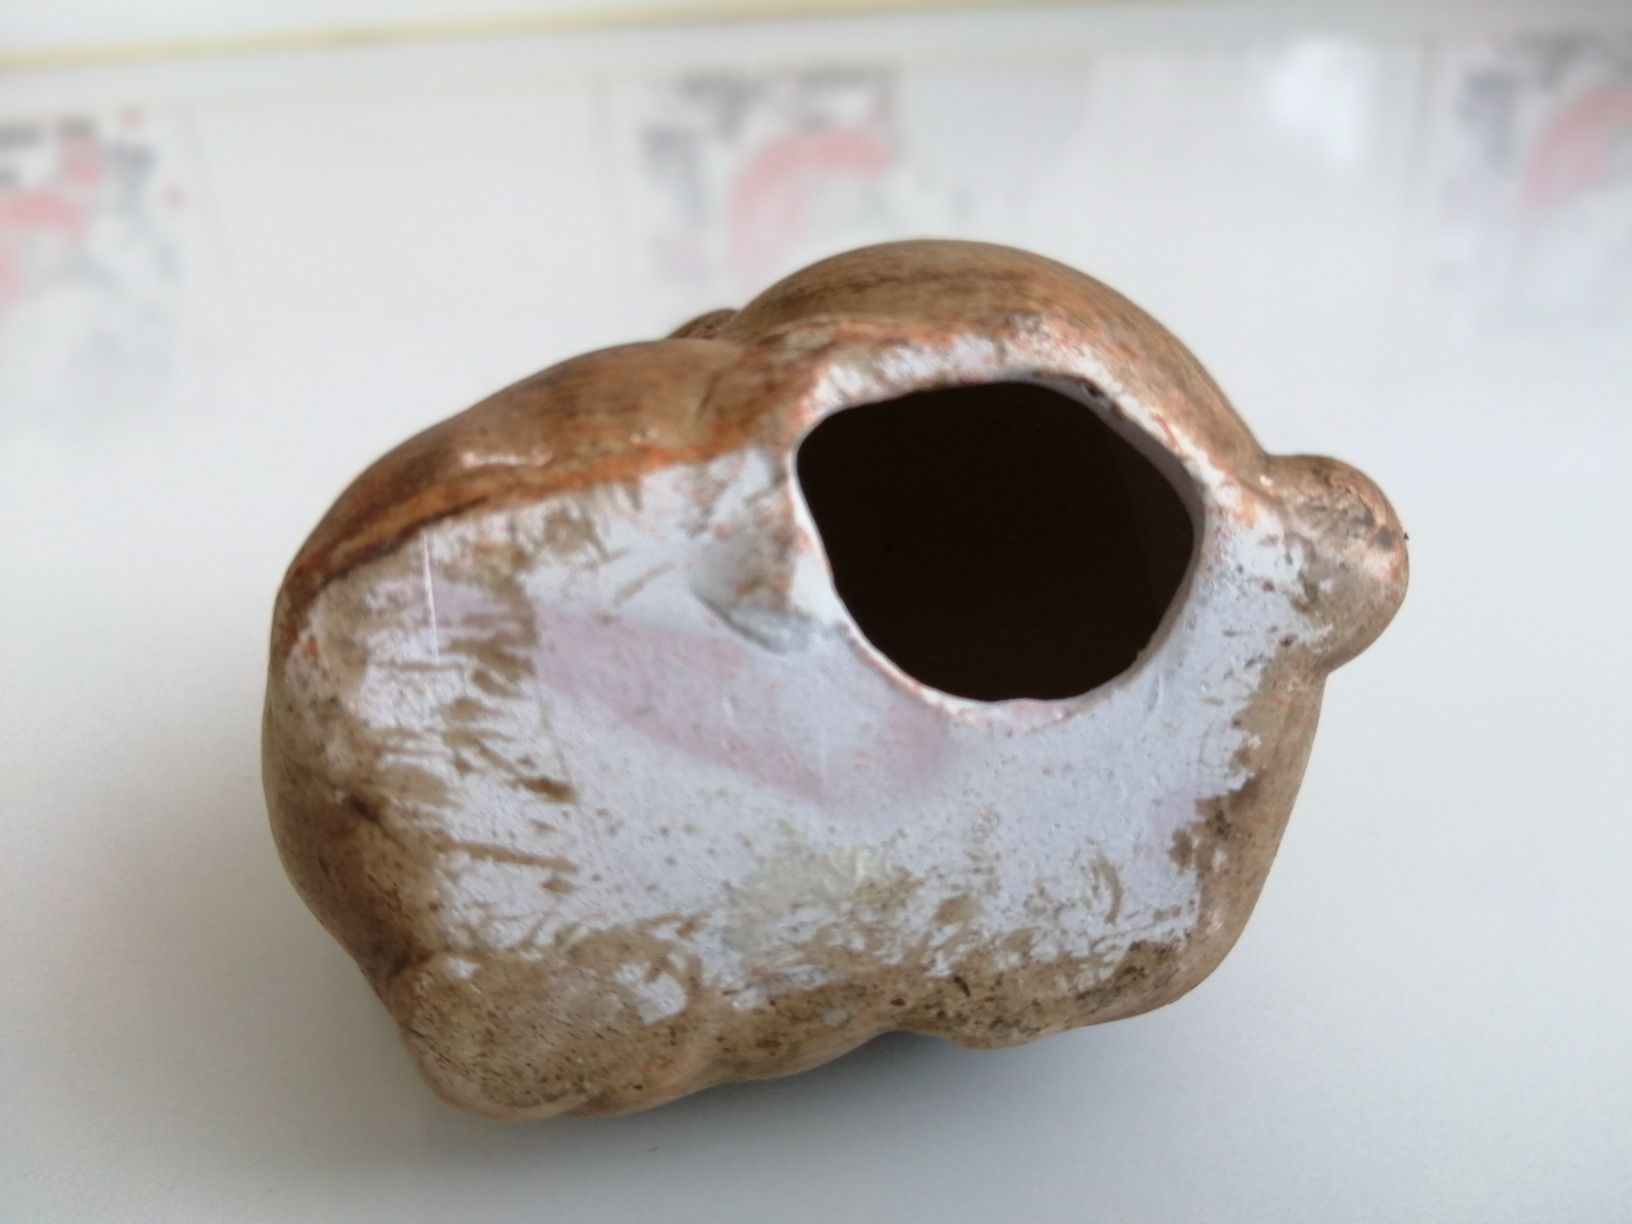 Figurka zając królik porcelana ceramika PRL